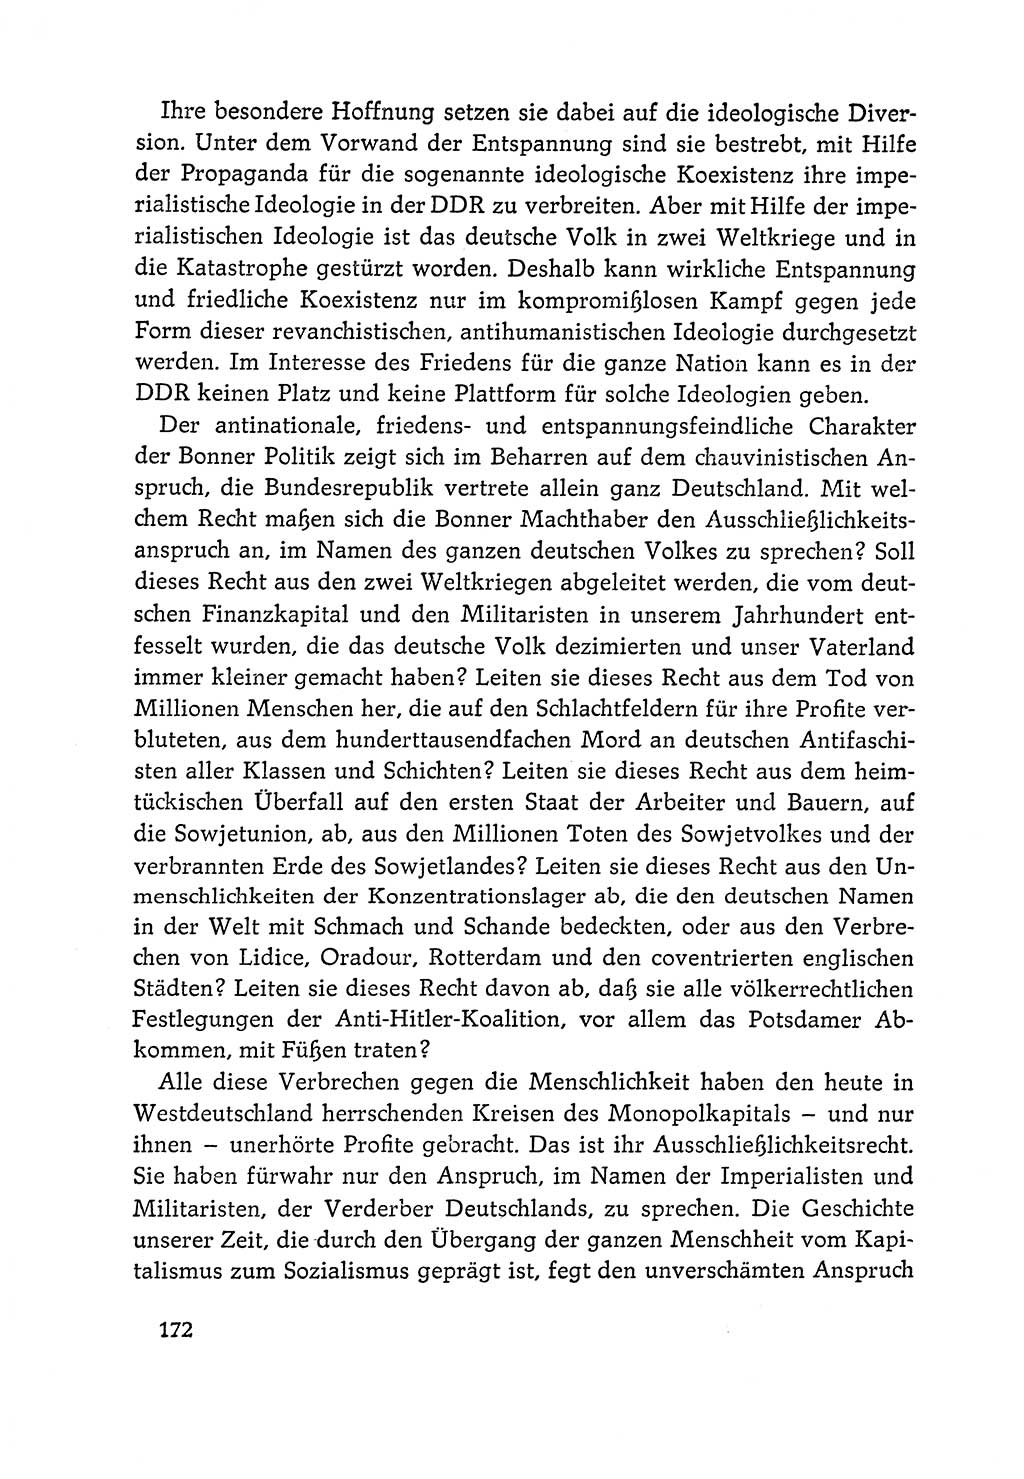 Dokumente der Sozialistischen Einheitspartei Deutschlands (SED) [Deutsche Demokratische Republik (DDR)] 1964-1965, Seite 172 (Dok. SED DDR 1964-1965, S. 172)